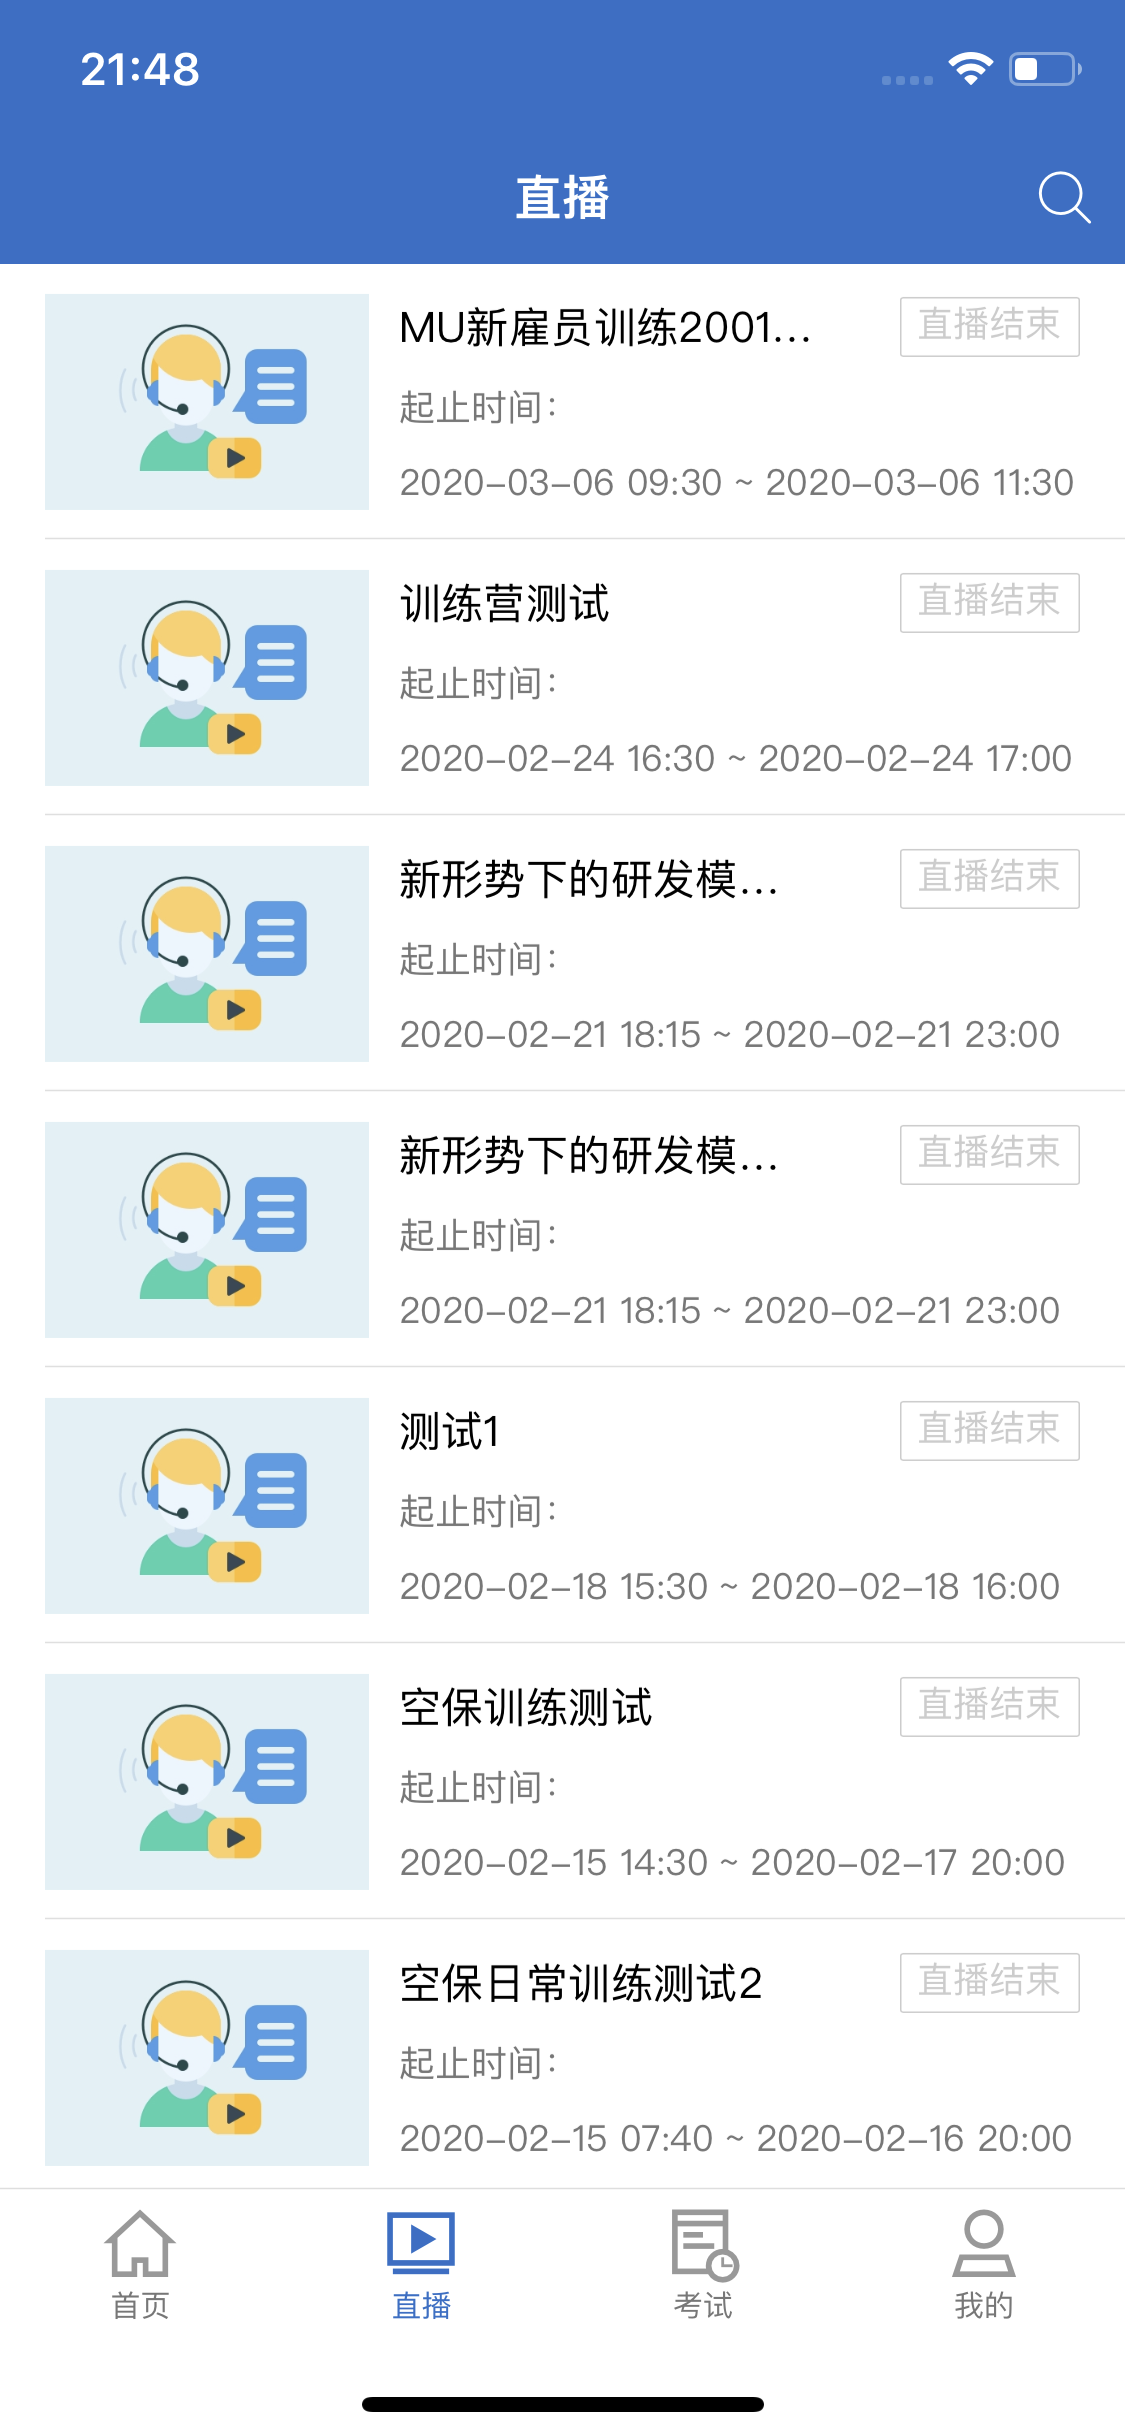 飞机app下载中文版最新版本收费吗?的简单介绍